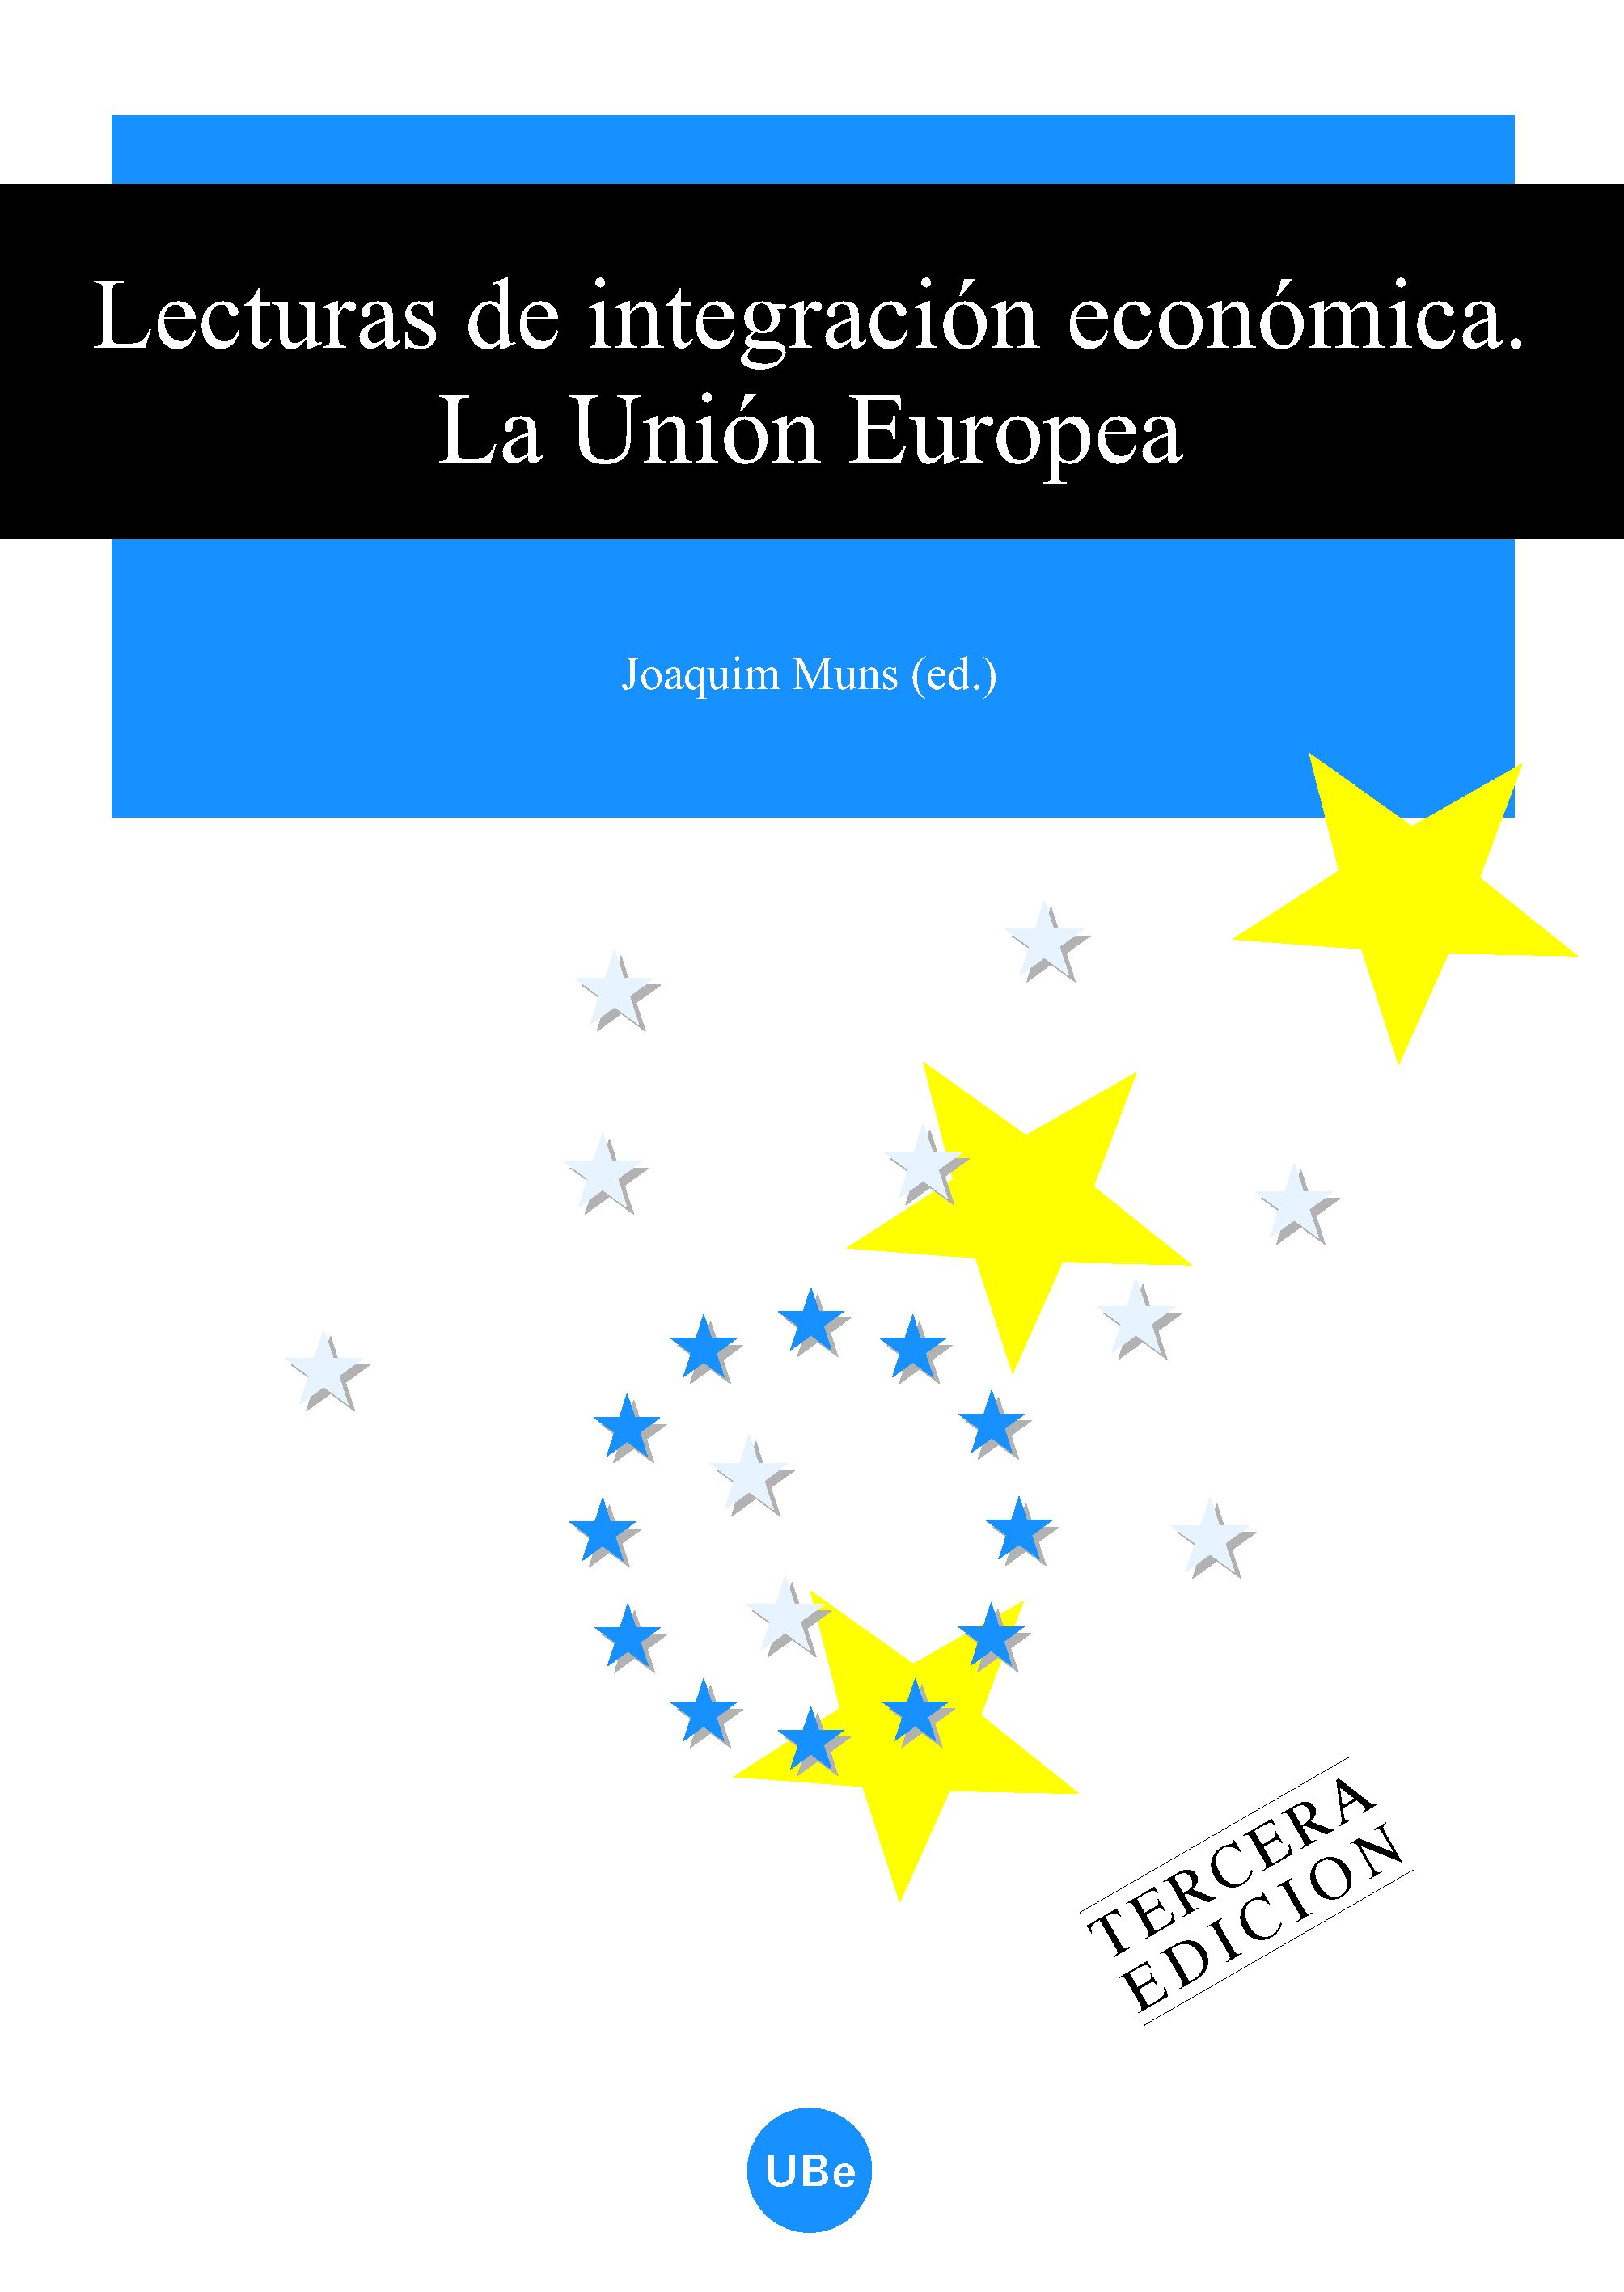 Lecturas de integraciÃ³n econÃ³mica (3a edic.). La UniÃ³n Europea